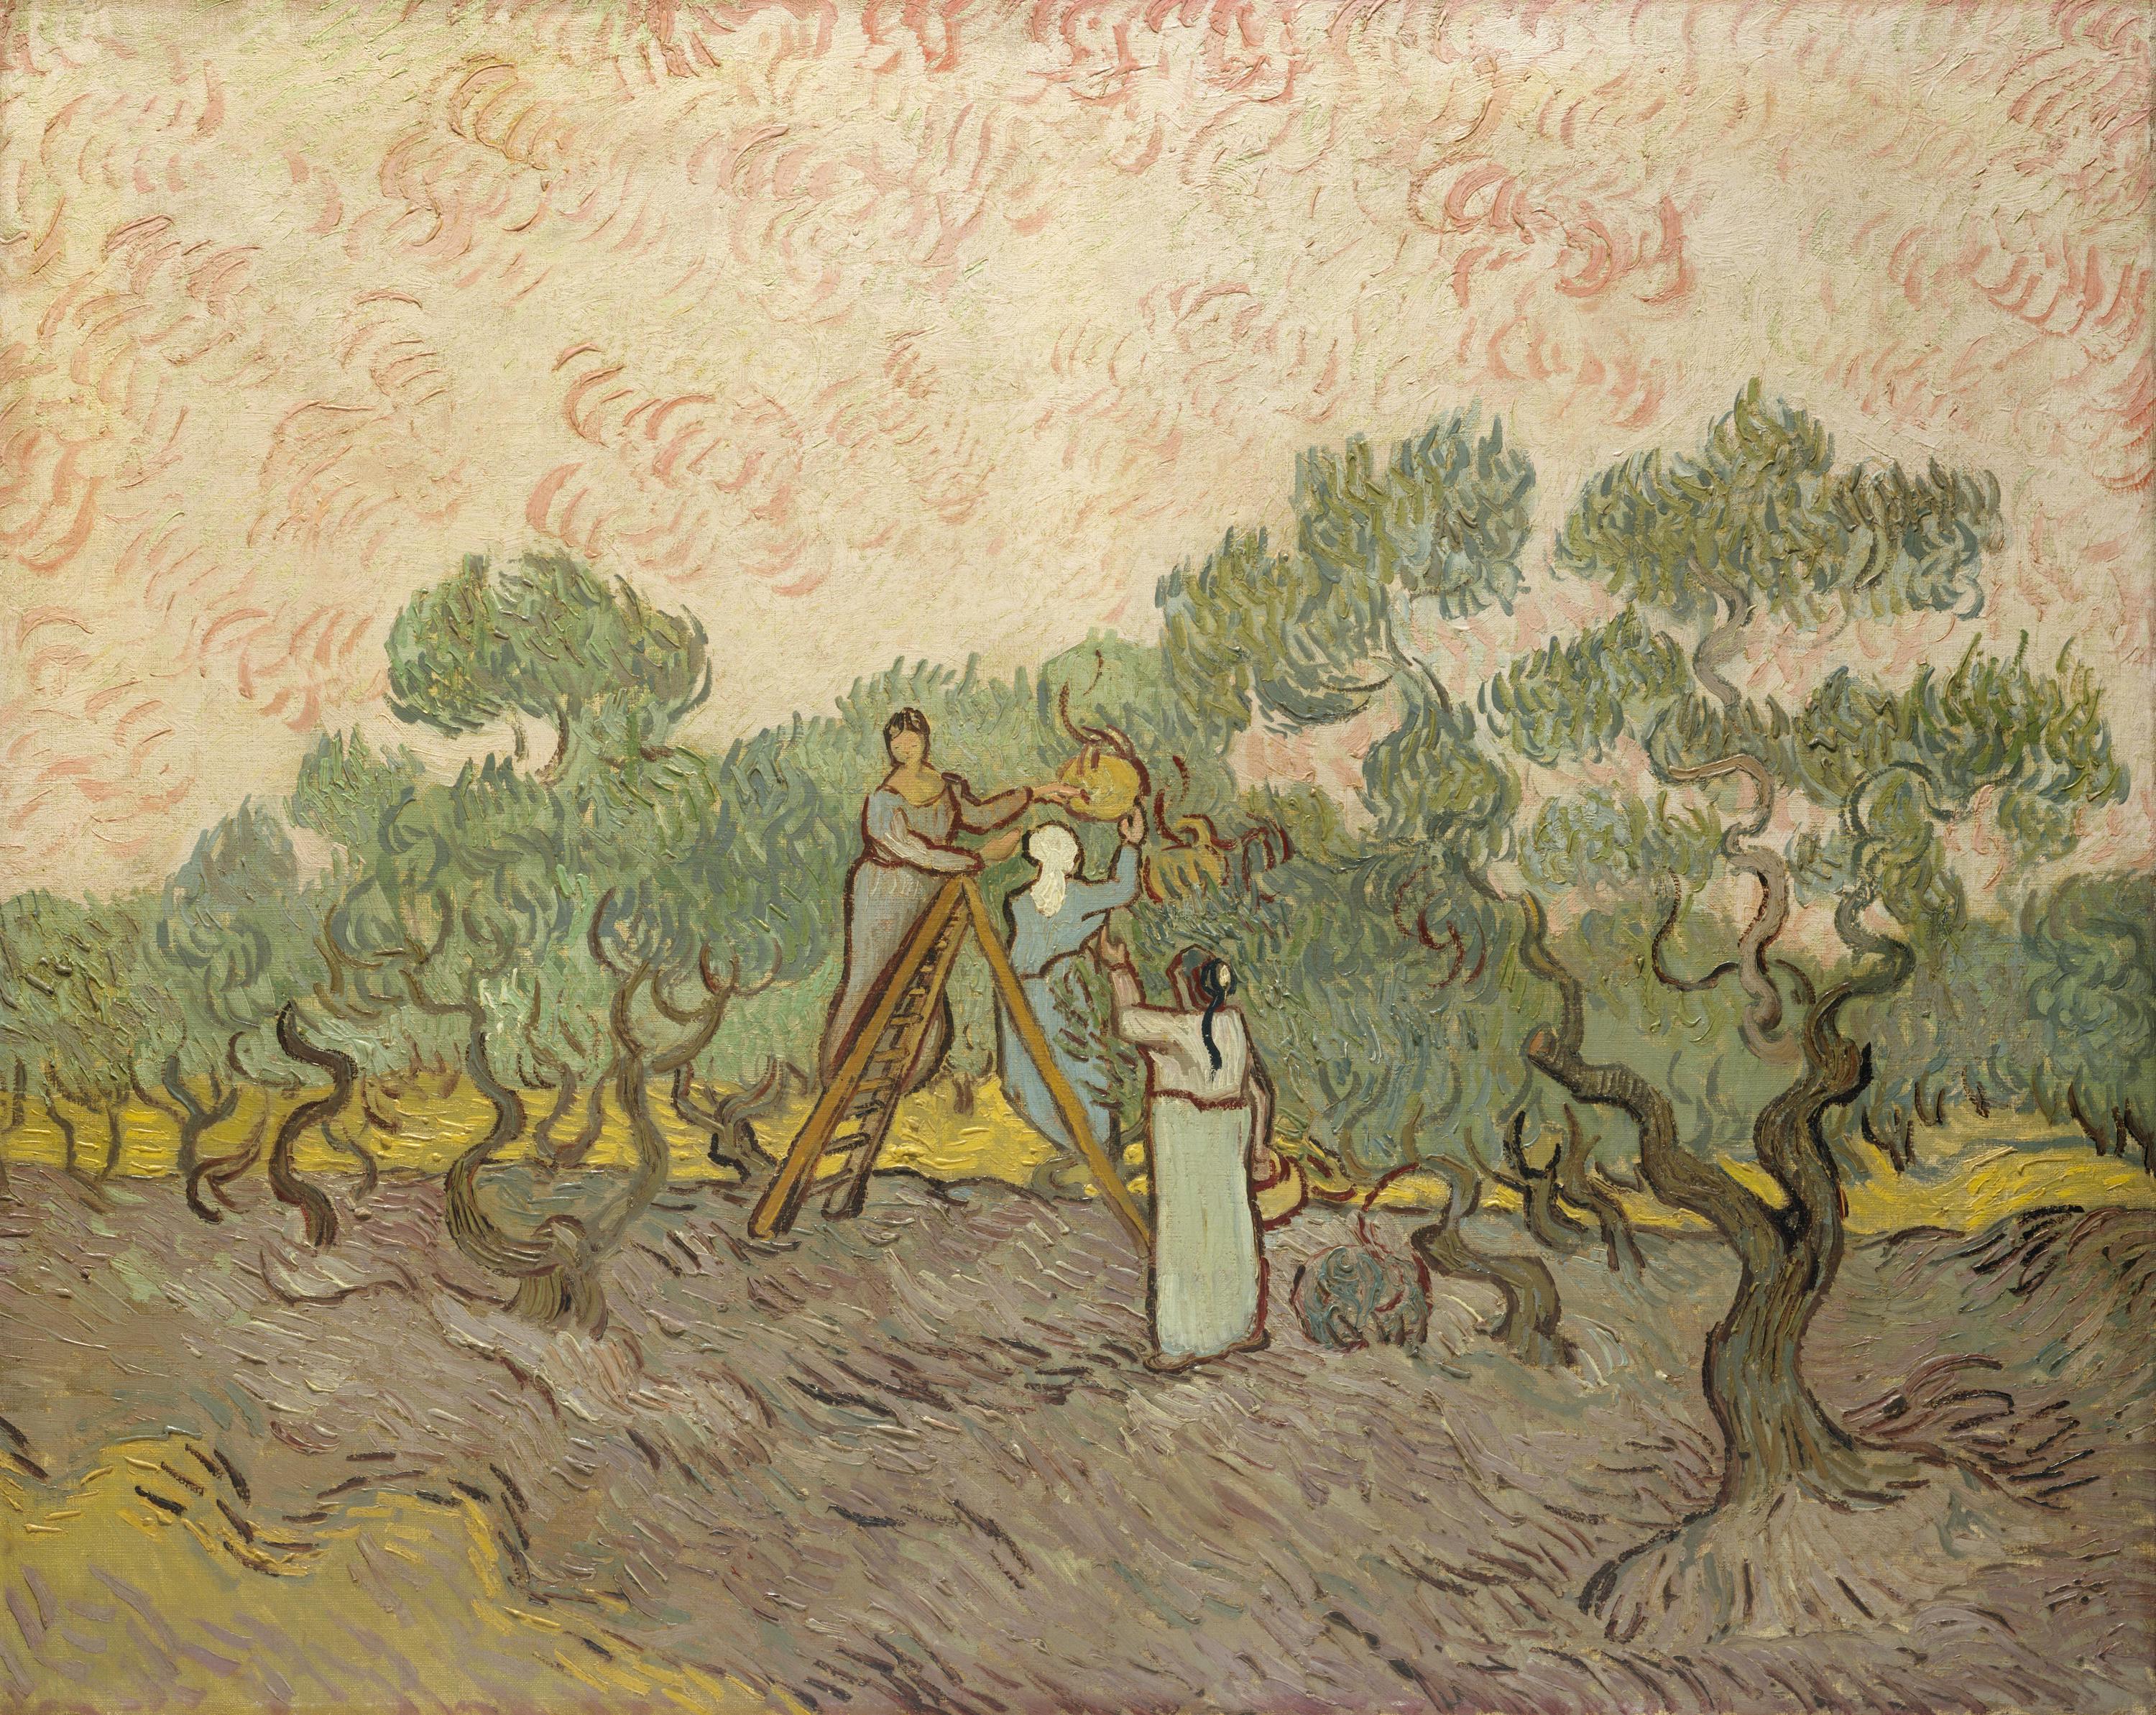 Женщины собирают оливки by Винсе́нт Виллем Ван Гог - 1889 - 72.7 x 91.4 см 